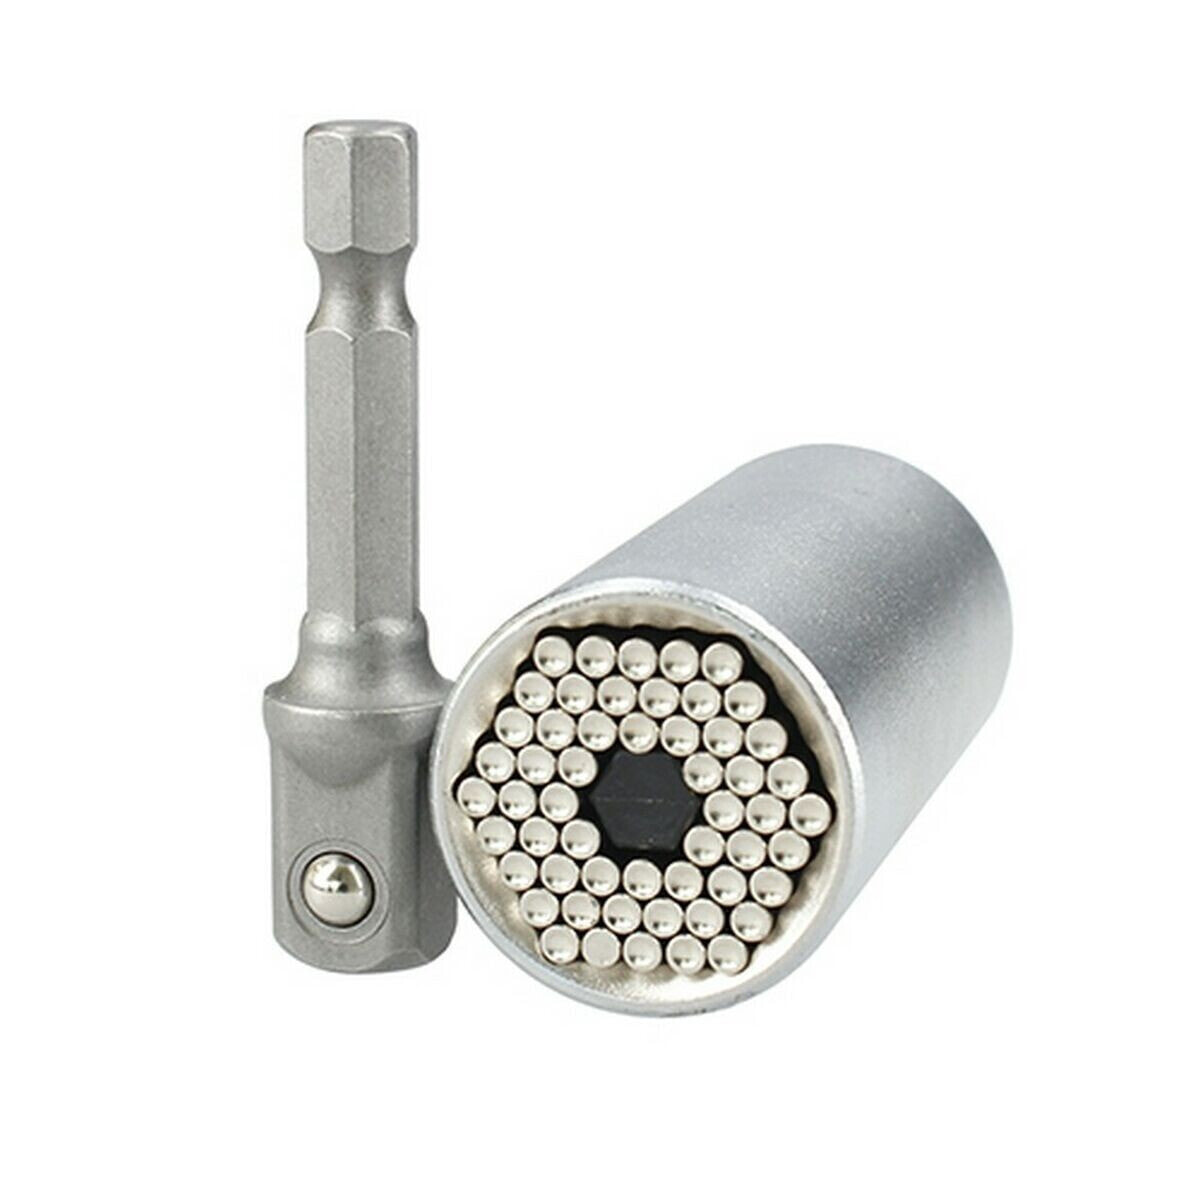 Socket wrench Ferrestock 7 a 19 mm Steel 3/8